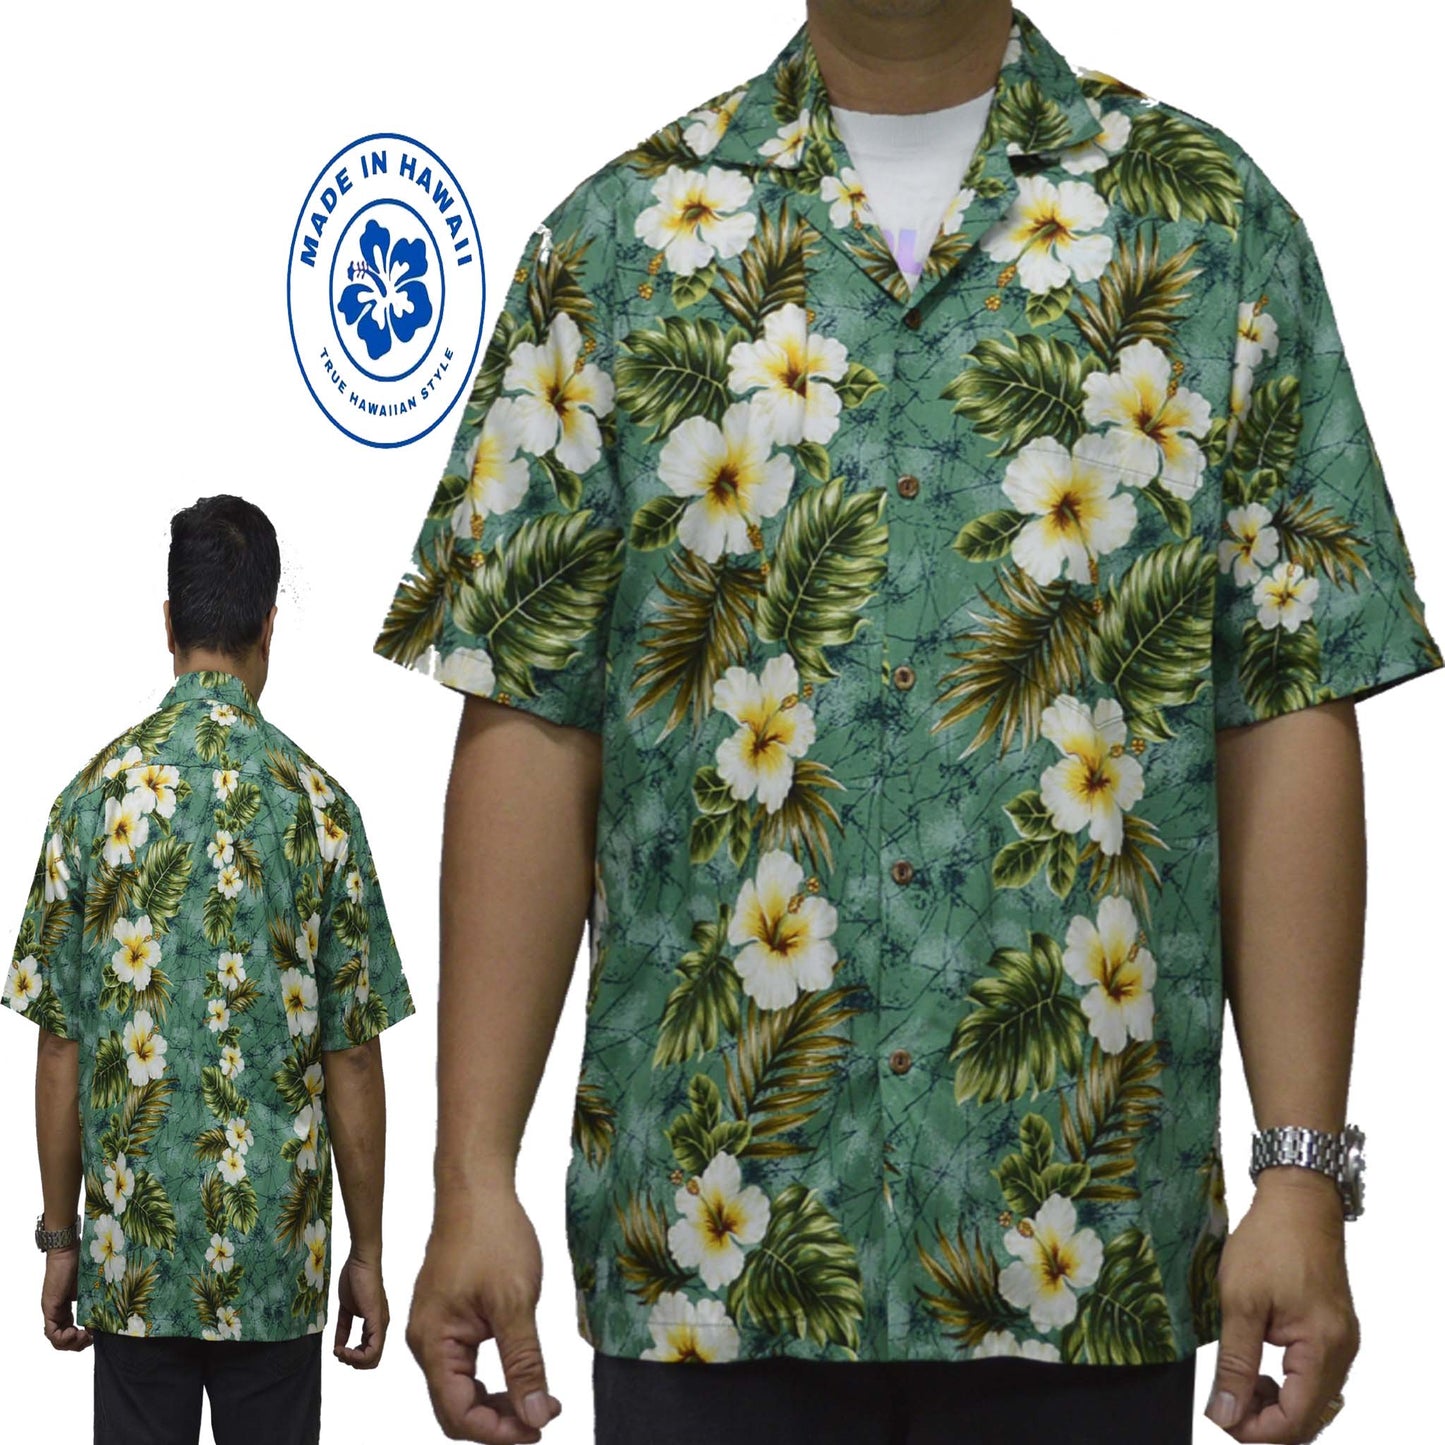 Couple Matching Women and Men Cotton Shirts Hawaiian Hibiscus